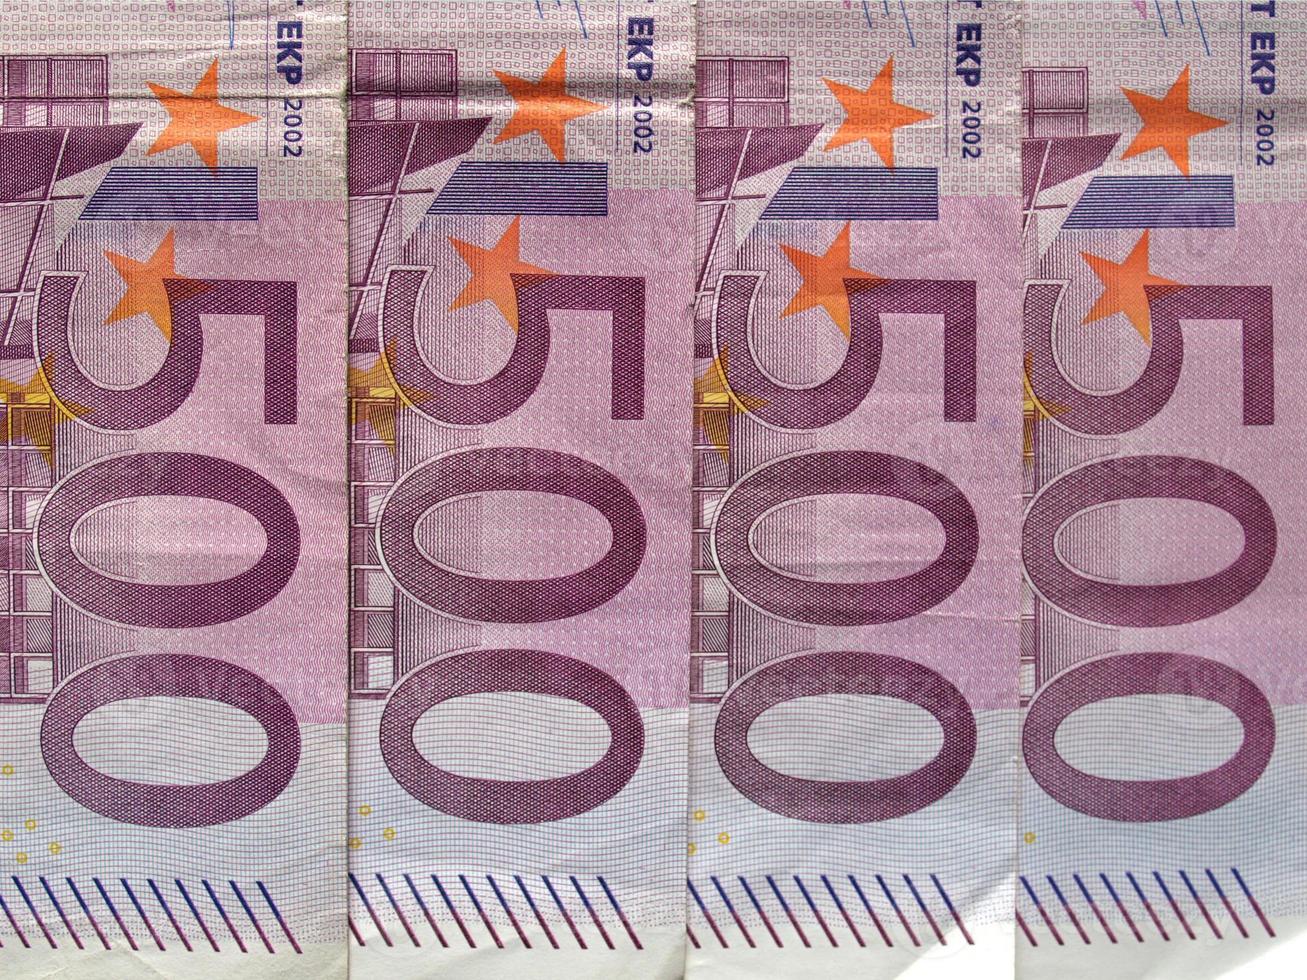 biljet van 500 euro, europese unie foto